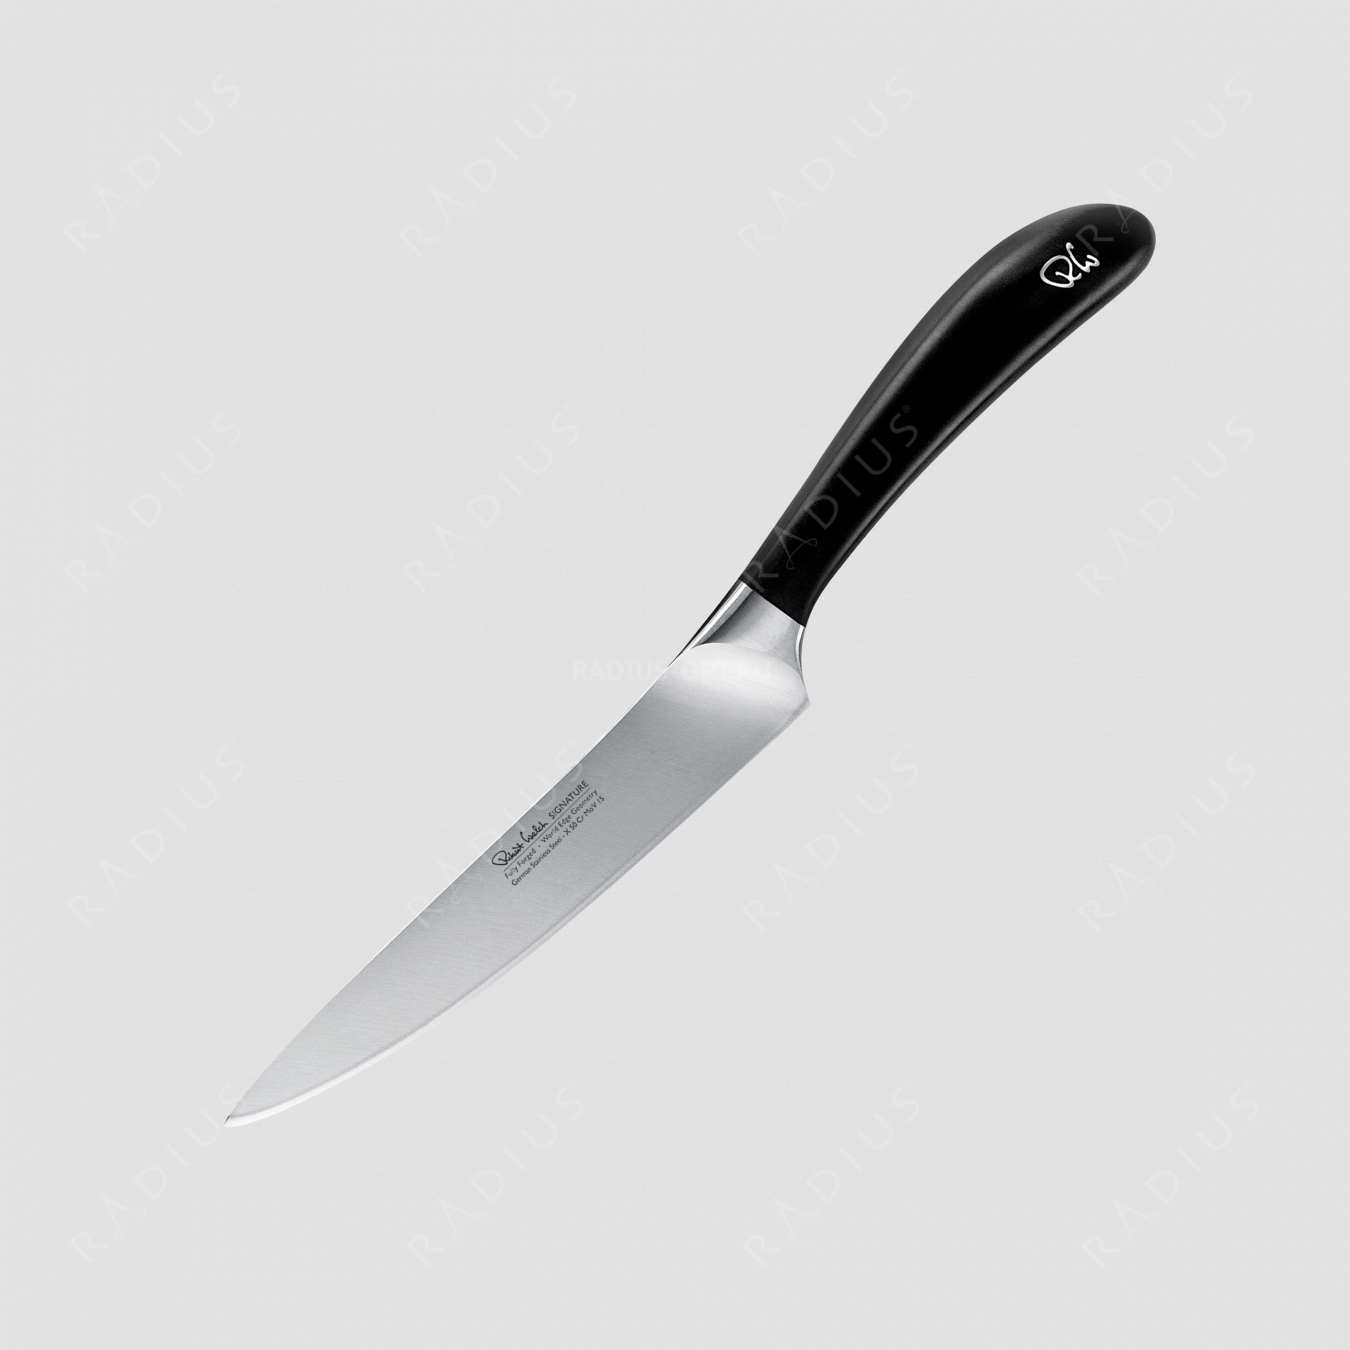 Нож кухонный поварской 14 см, серия Signature, ROBERT WELCH, Великобритания